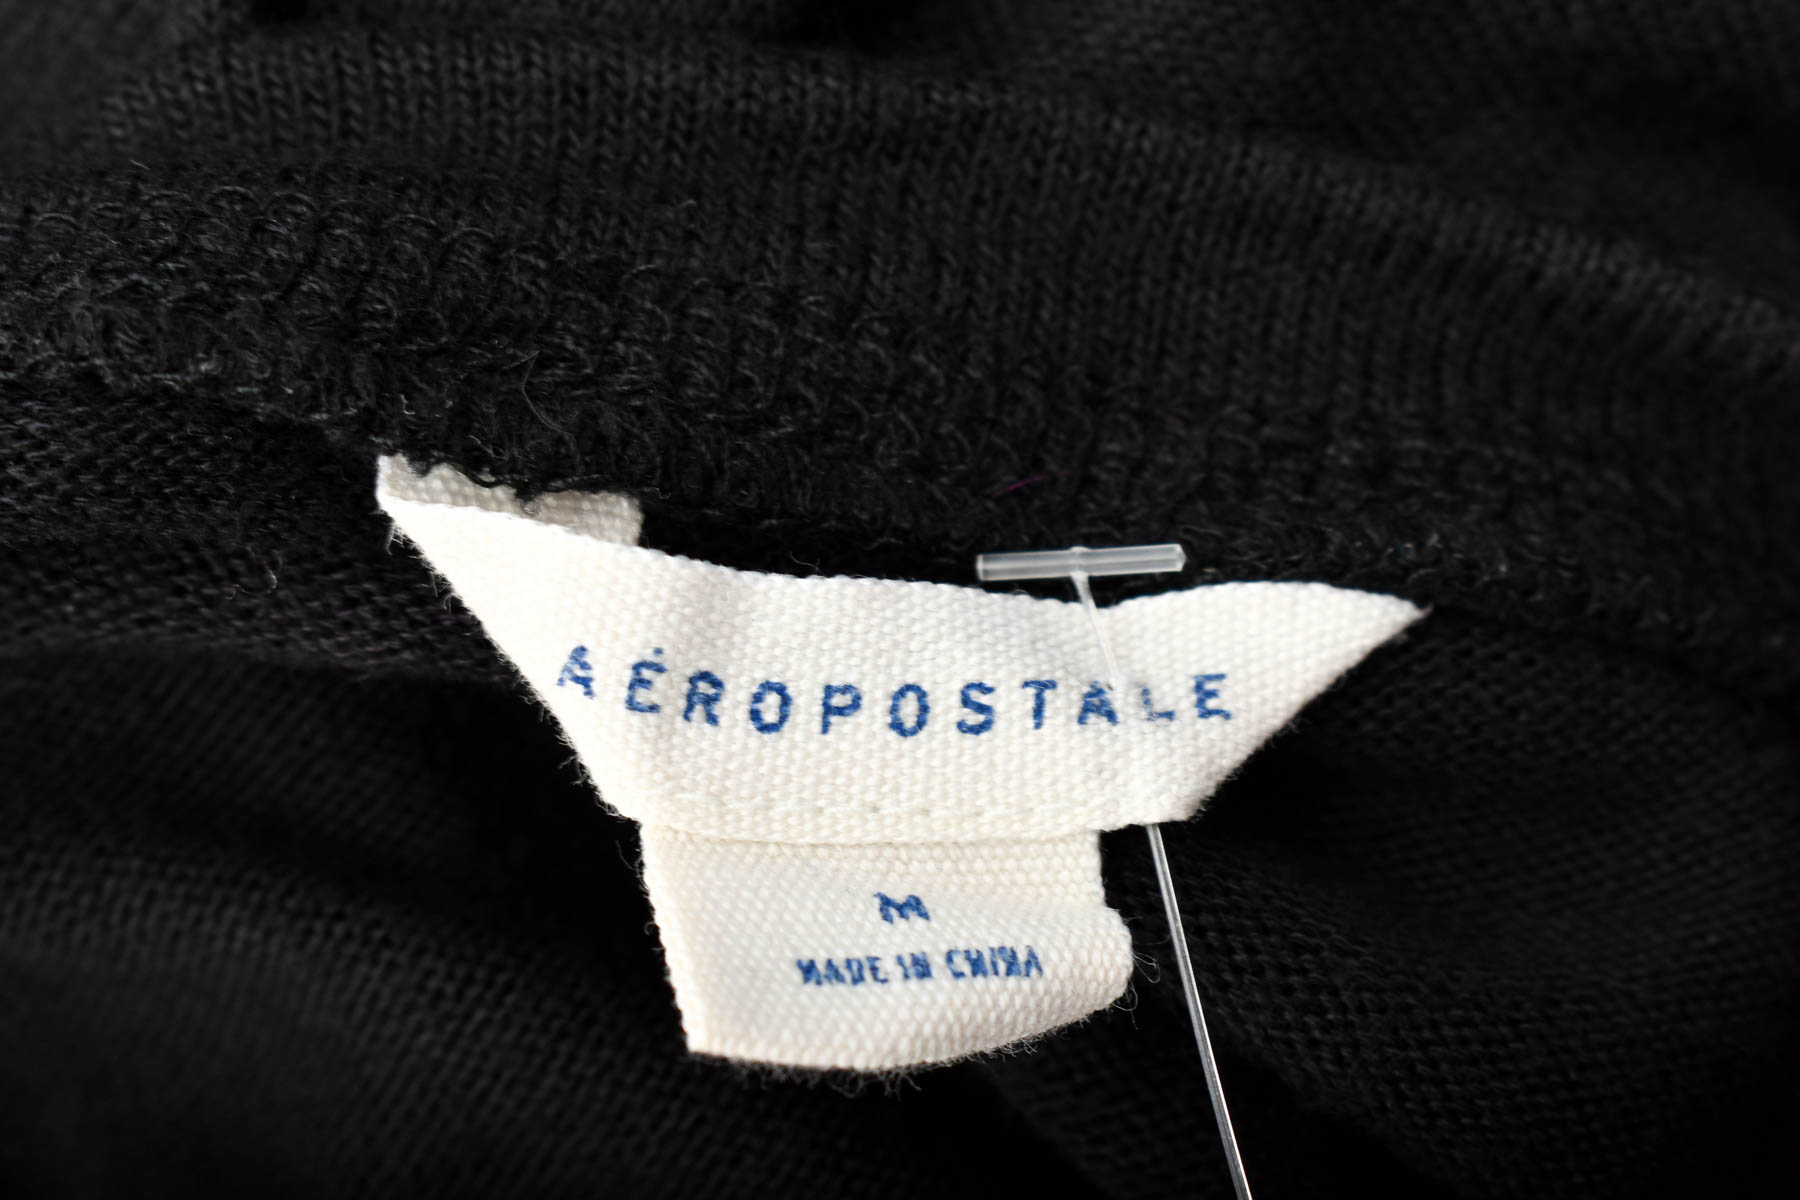 Women's sweater - Aeropostale - 2